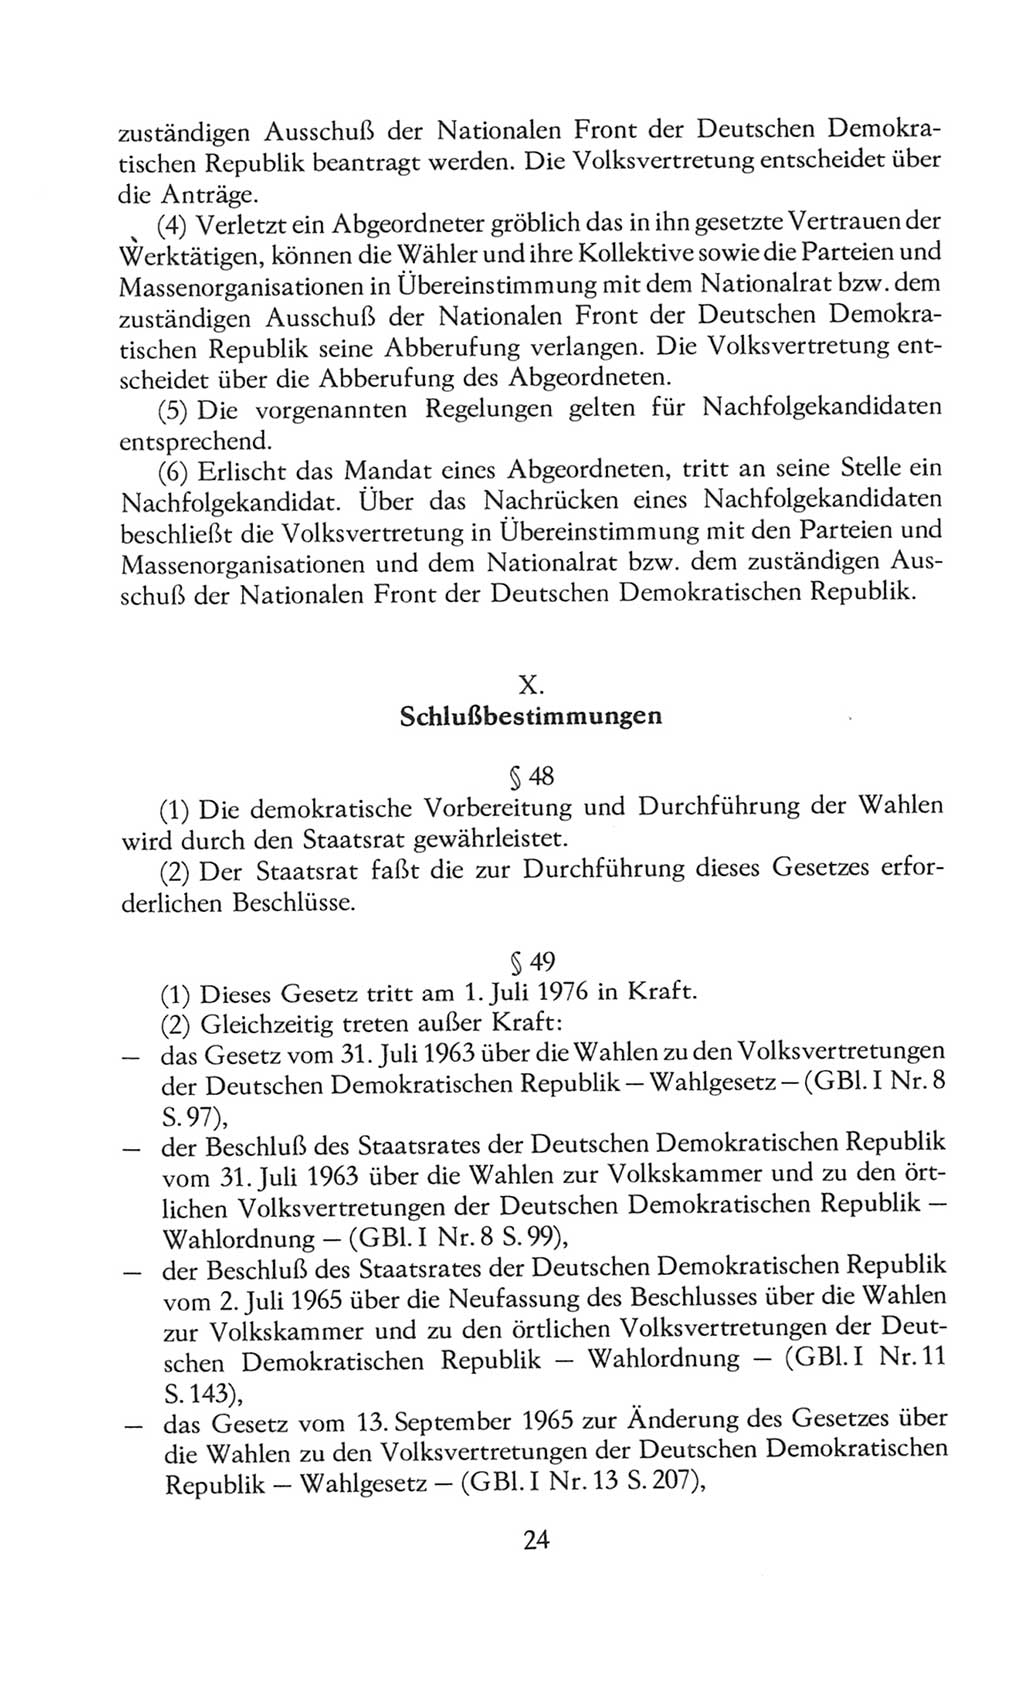 Volkskammer (VK) der Deutschen Demokratischen Republik (DDR), 8. Wahlperiode 1981-1986, Seite 24 (VK. DDR 8. WP. 1981-1986, S. 24)